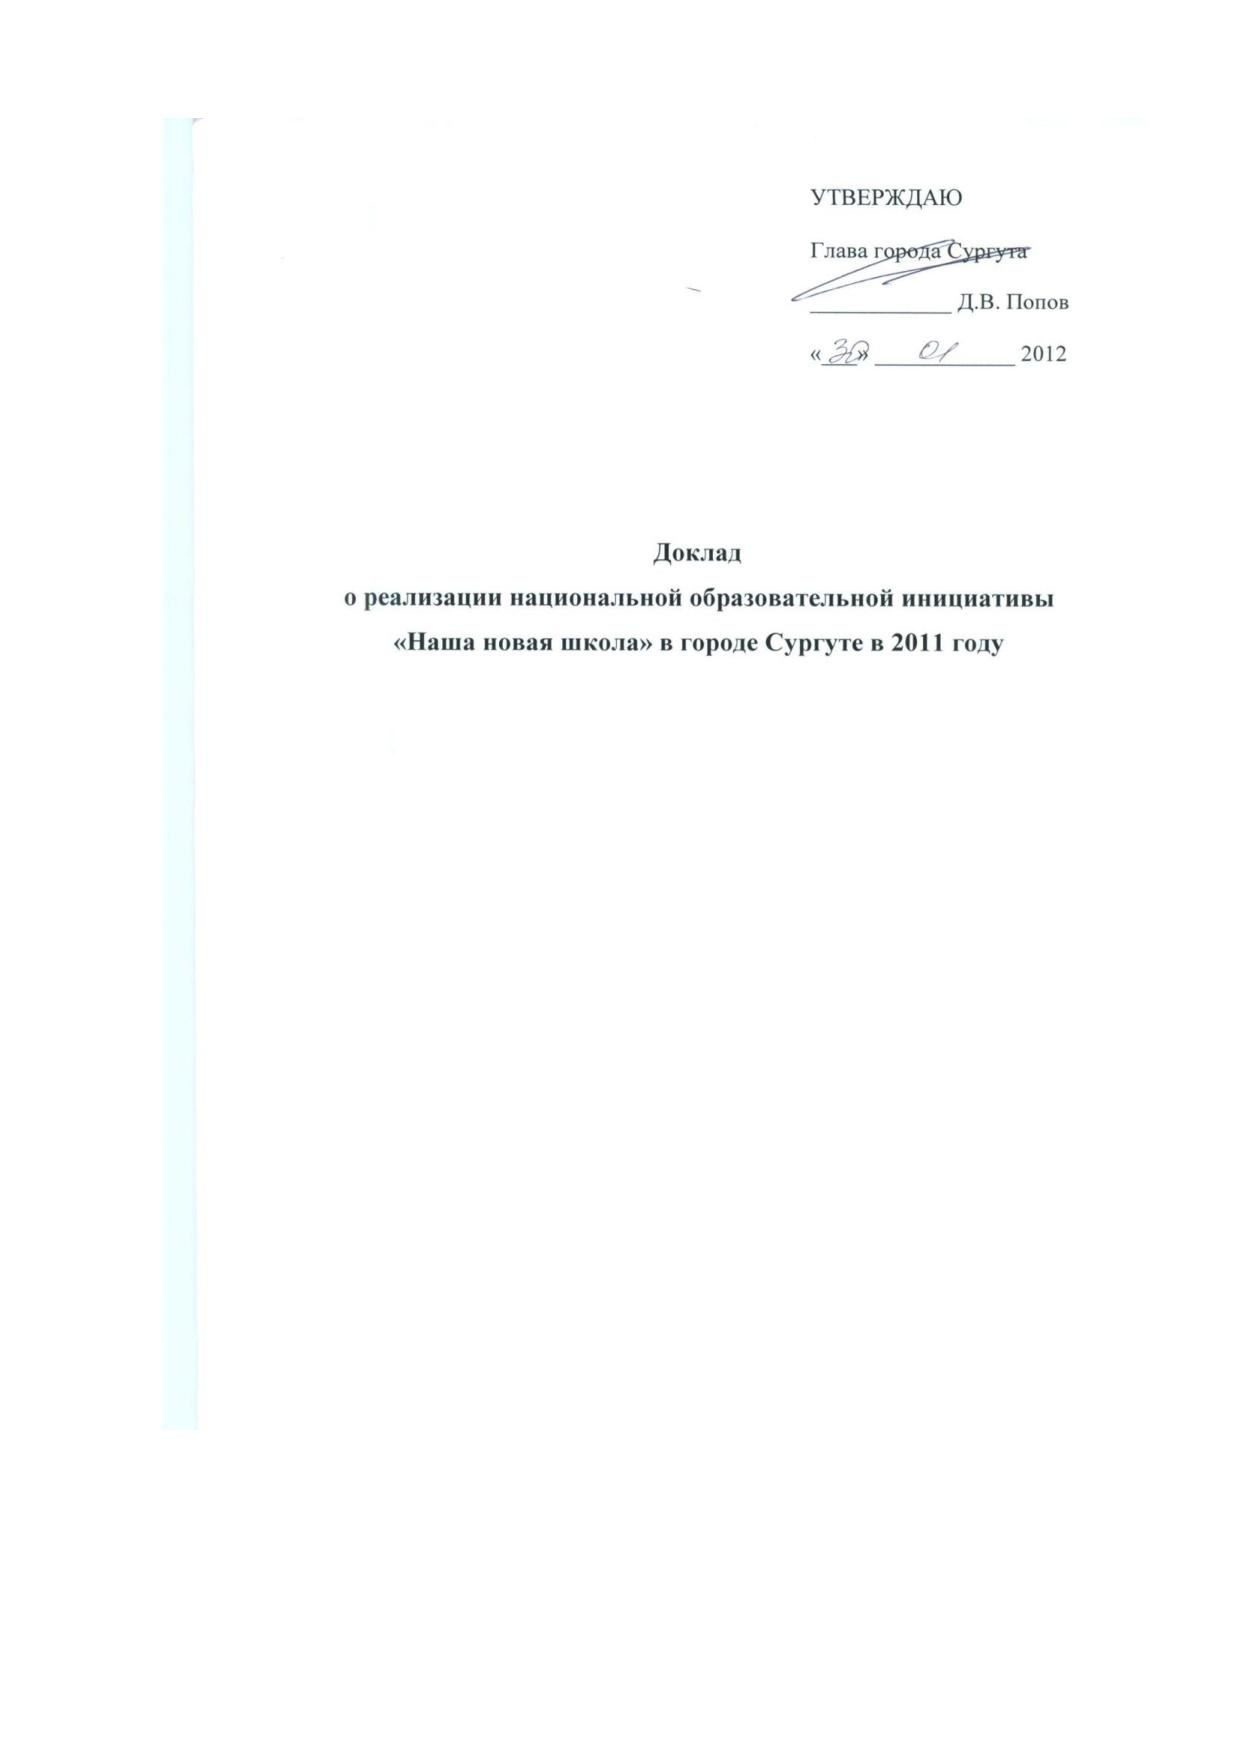 Доклад ННШ 01.02.2012.pdf